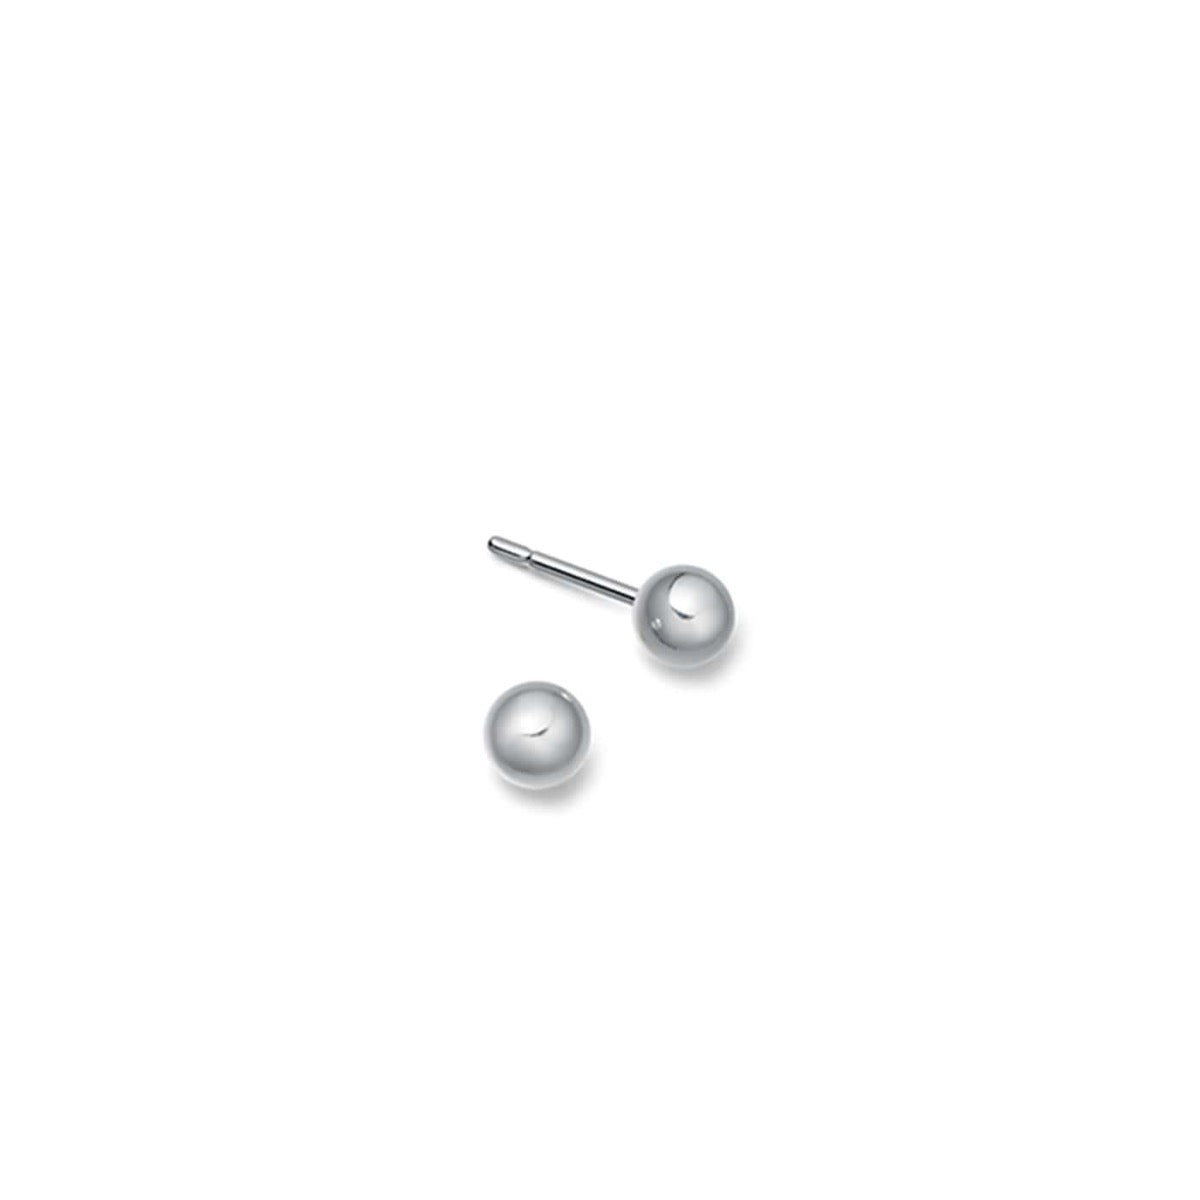 Silver ball stud earrings